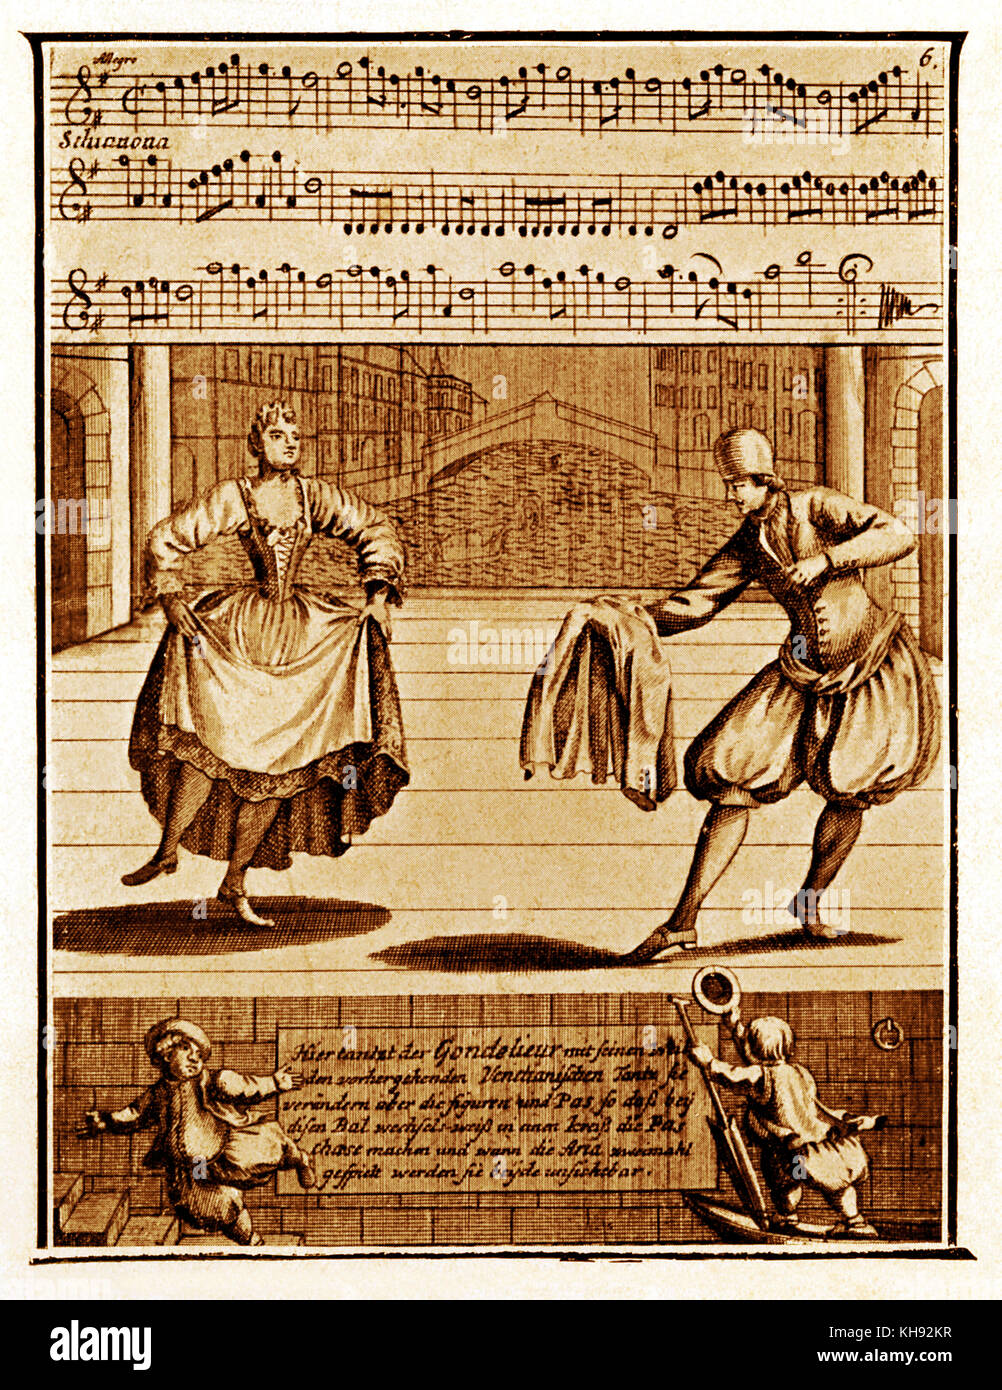 Danse des gondoliers Vénitiens - de la gravure publié dans Lambrauzi's Ecole de Danse. Danses de ballet du 17ème/18ème siècle. (Anglais : 'Danse de gondoliers vénetiens'). Banque D'Images